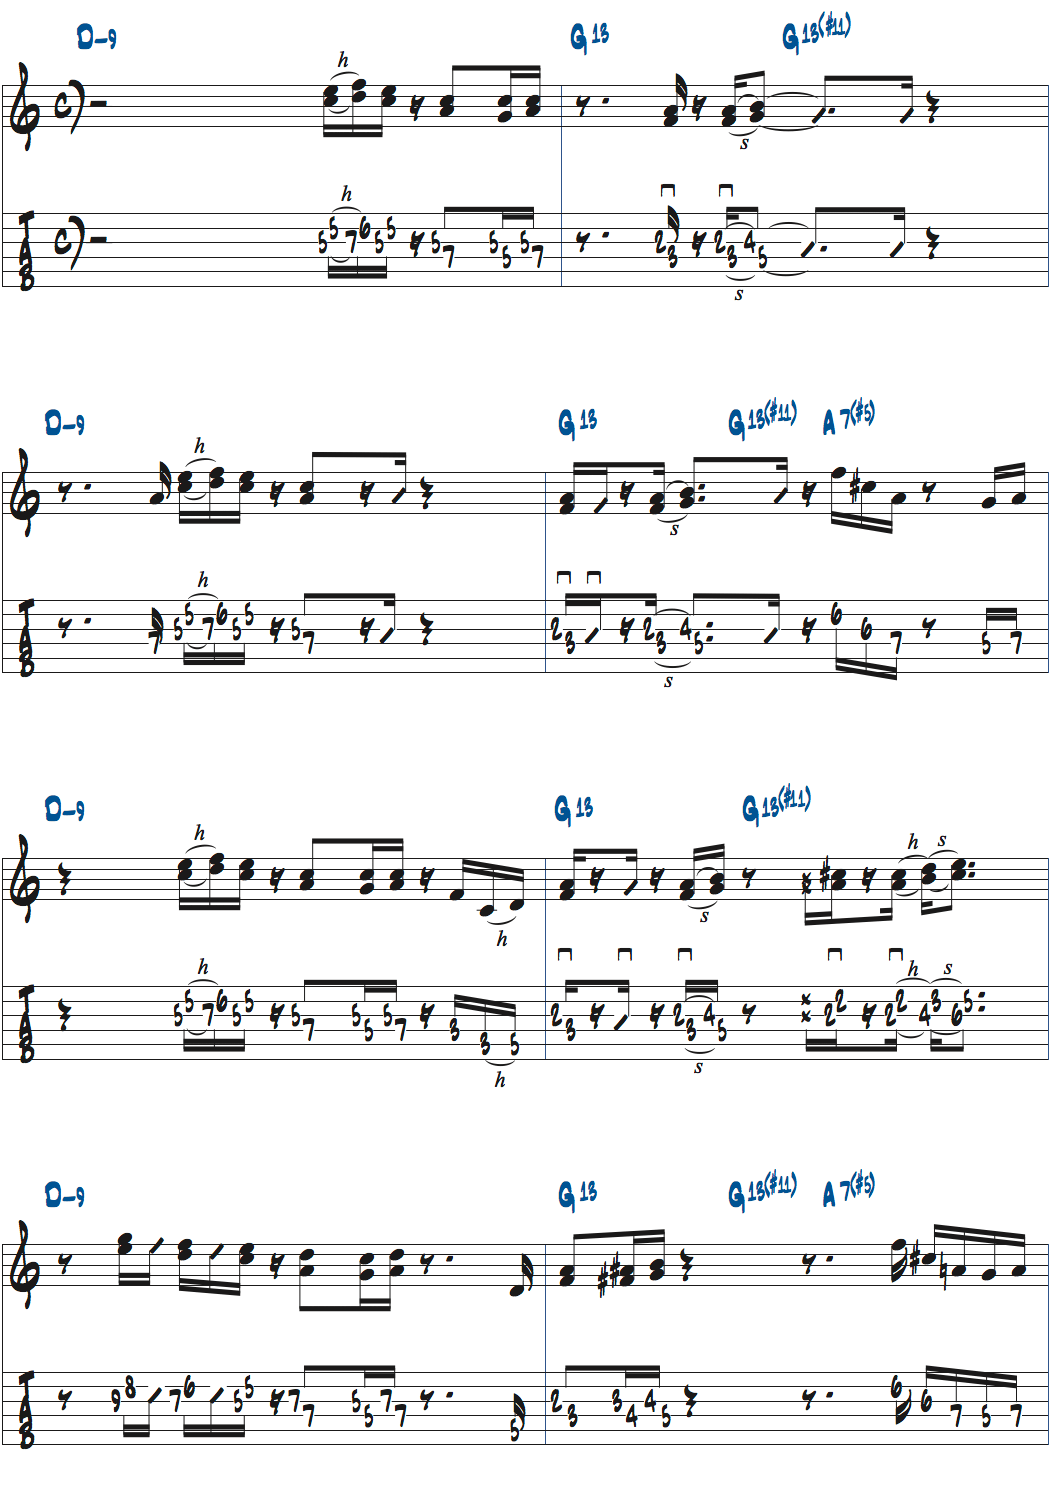 ポールジャクソンジュニアが弾くDm9-G13(#11)-A7+5のコードトーンを使ったバッキング楽譜ページ1